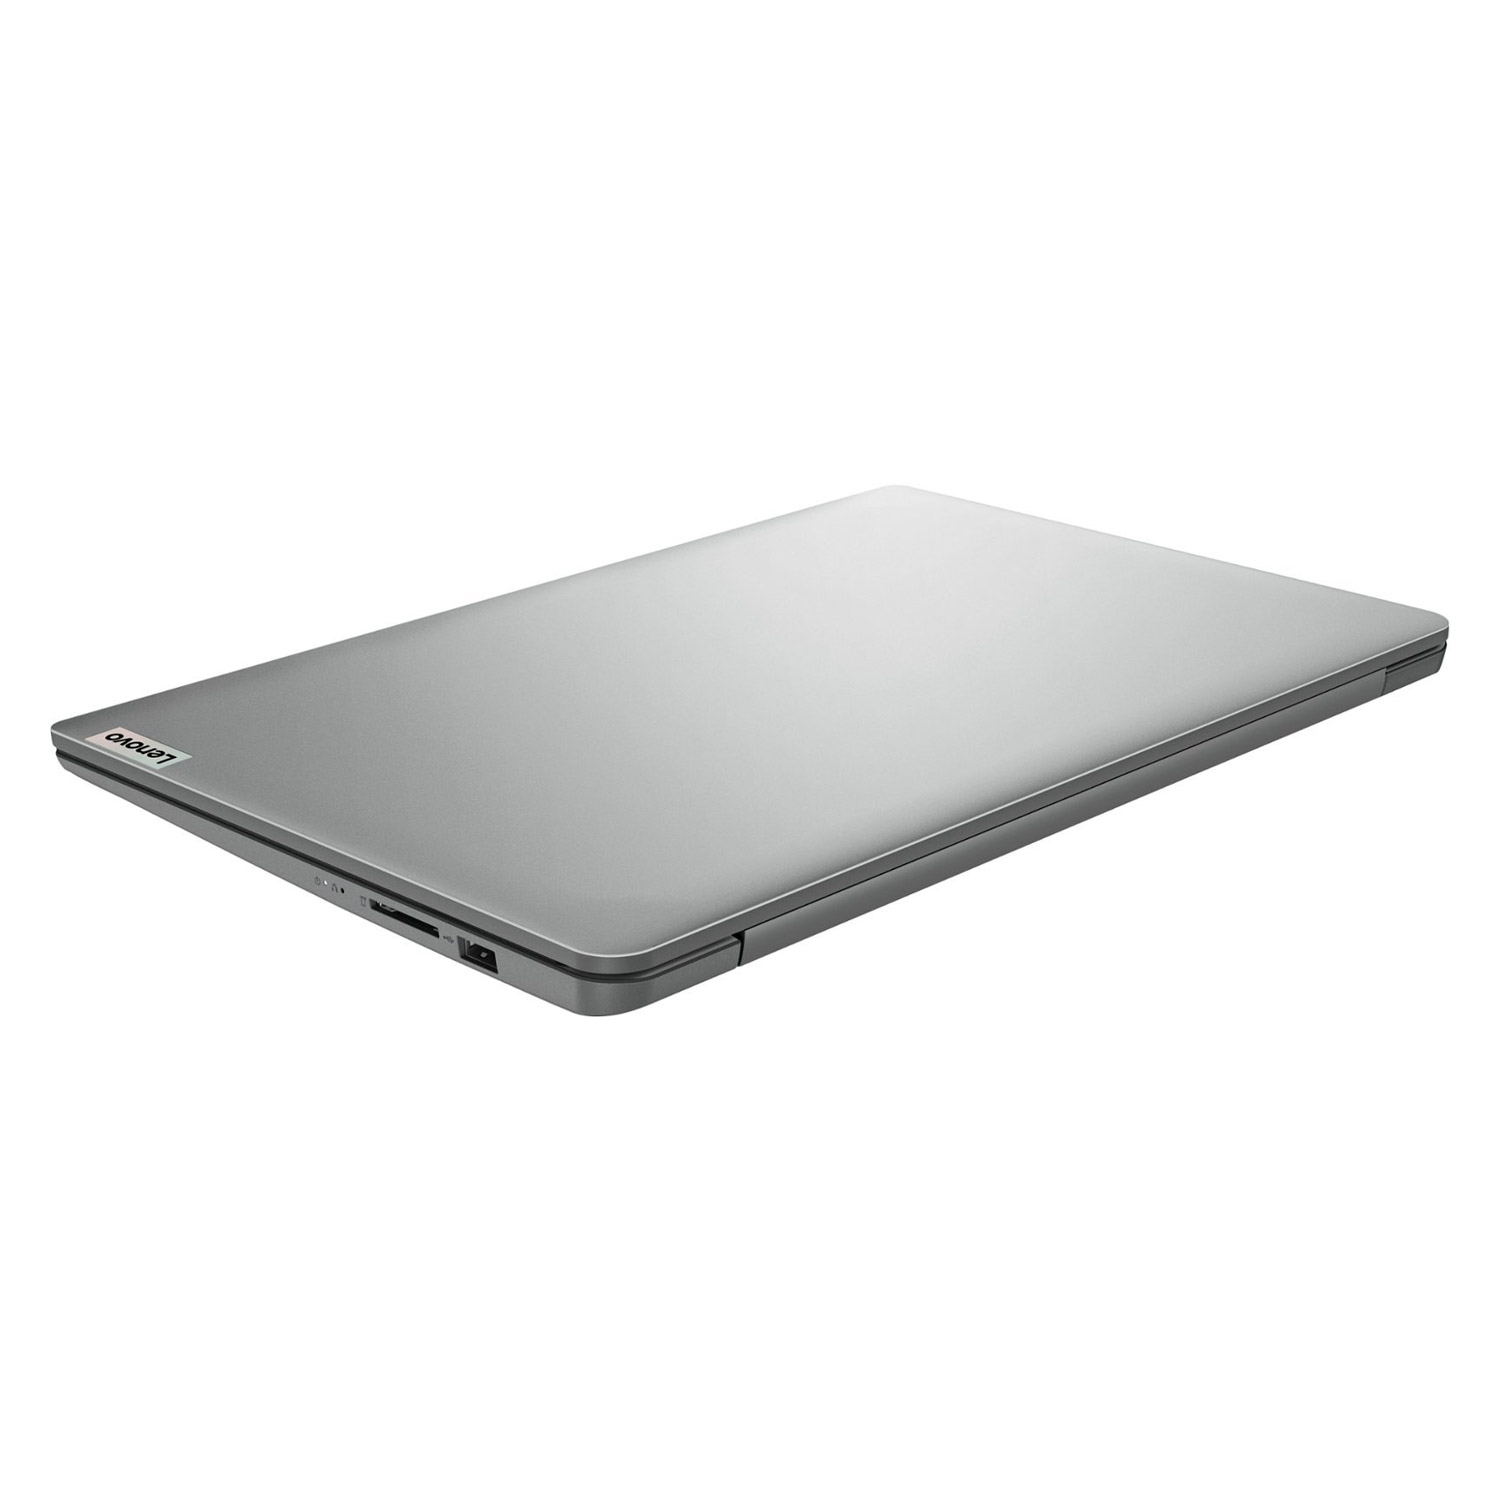 Notebook Lenovo IdeaPad 1 82V60065US 14" Intel Celeron N4020 128GB EMMC 4GB RAM - Cinza